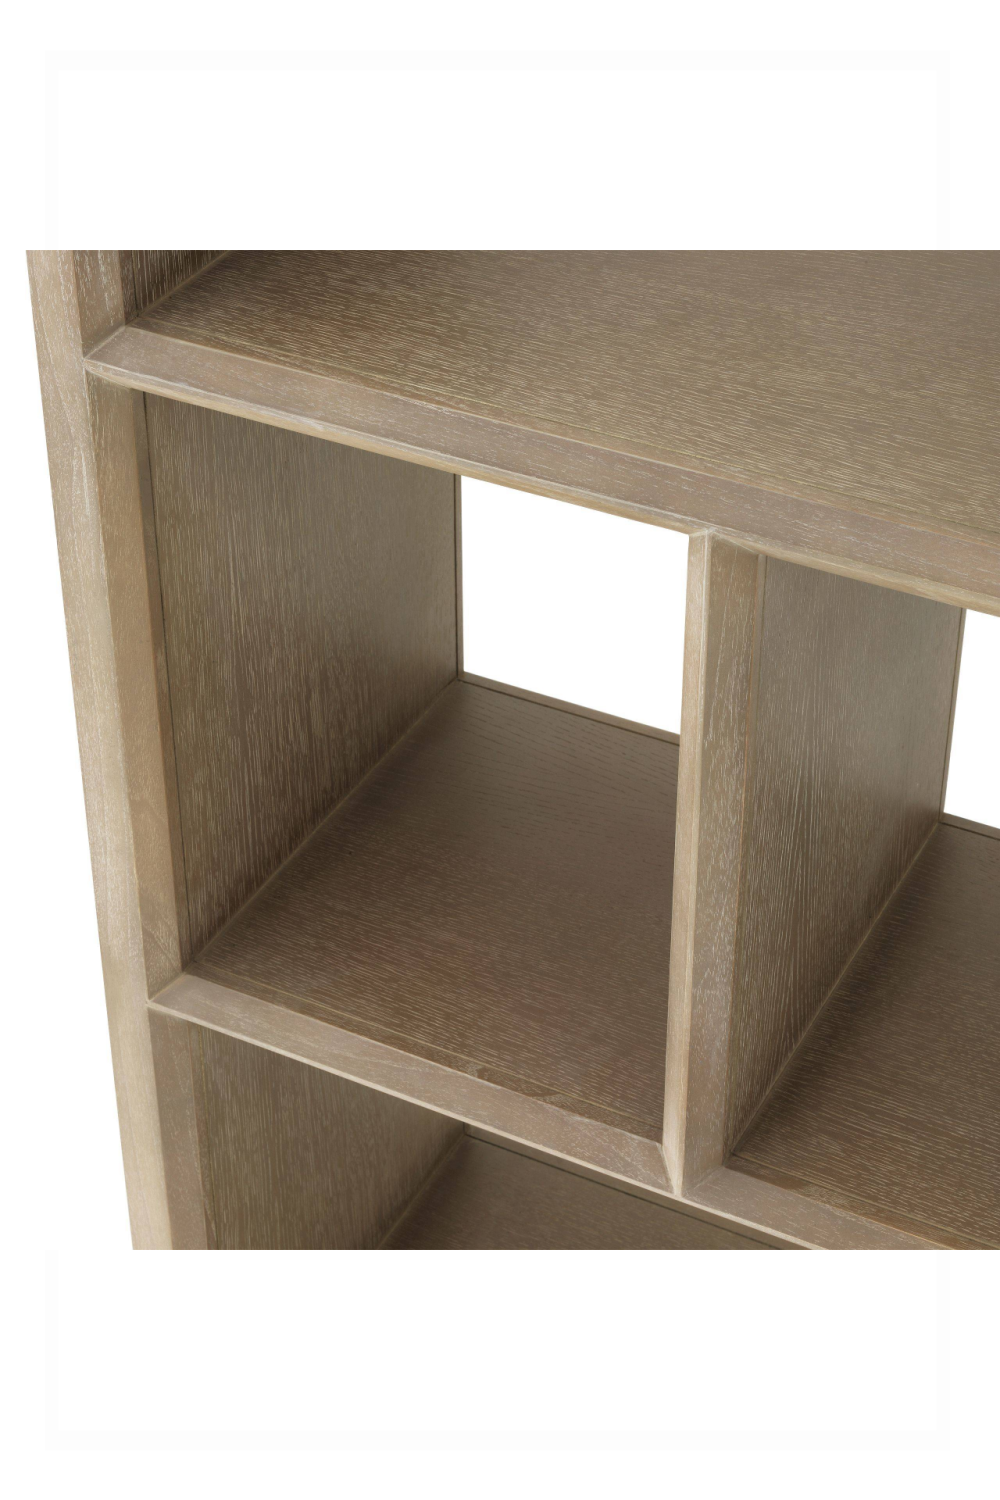 Washed Oak Cabinet | Eichholtz Marguesa | #1 Eichholtz Retailer 